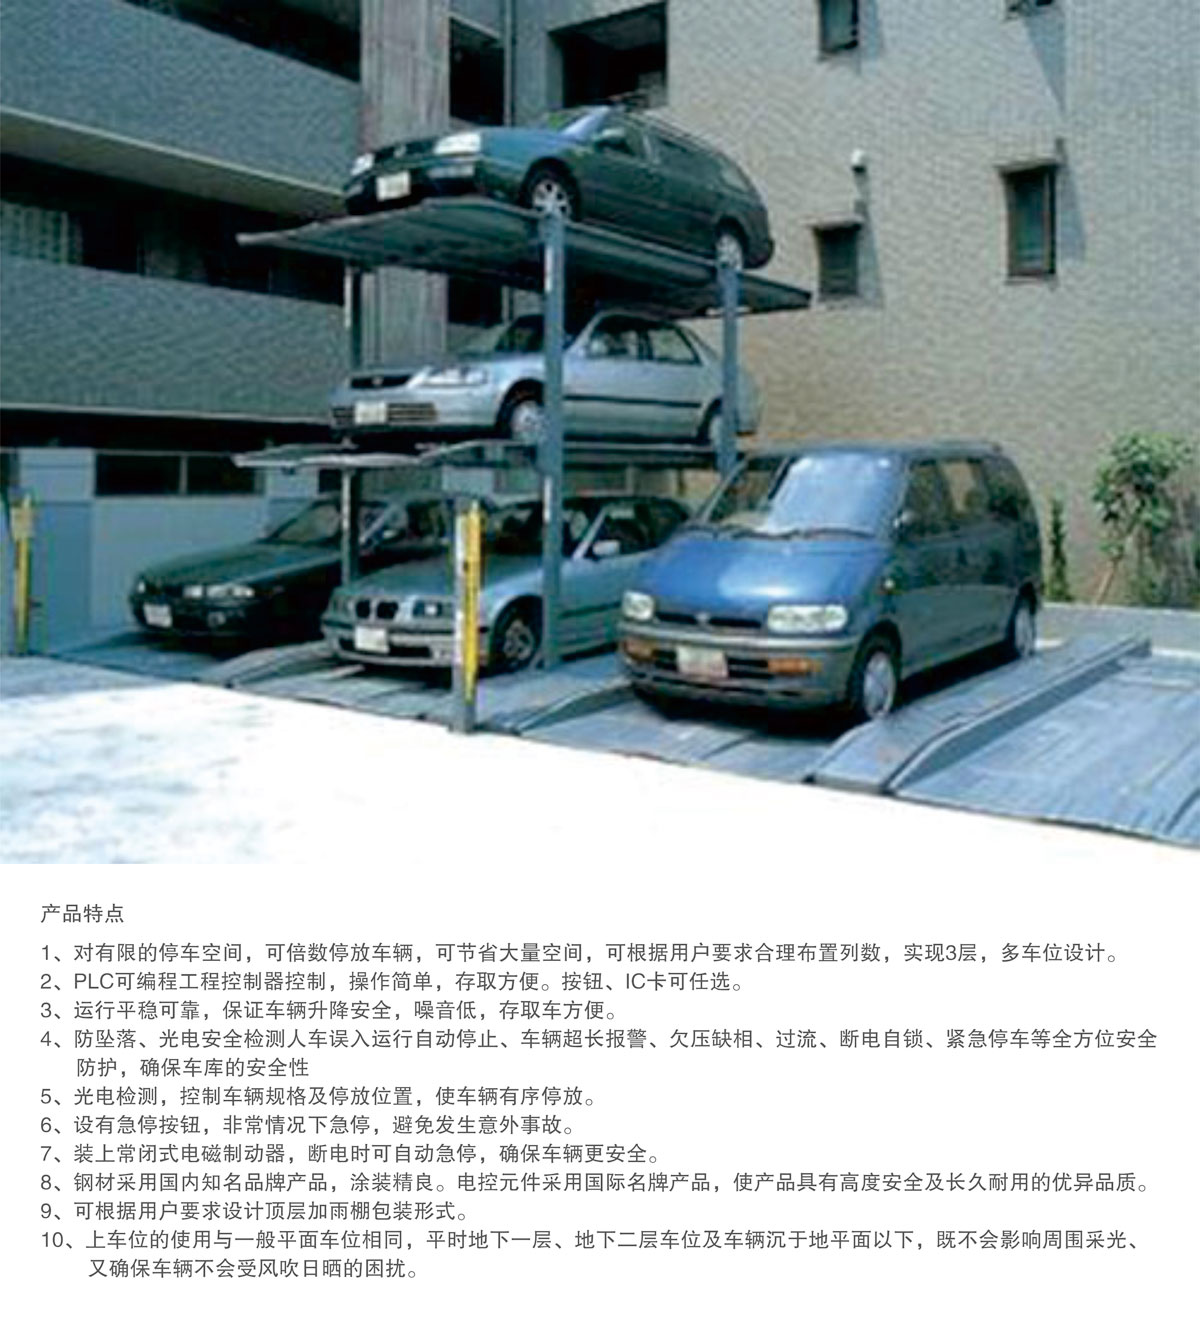 贵阳莱贝PJS3-D2三层地坑简易升降机械式立体停车库产品特点.jpg